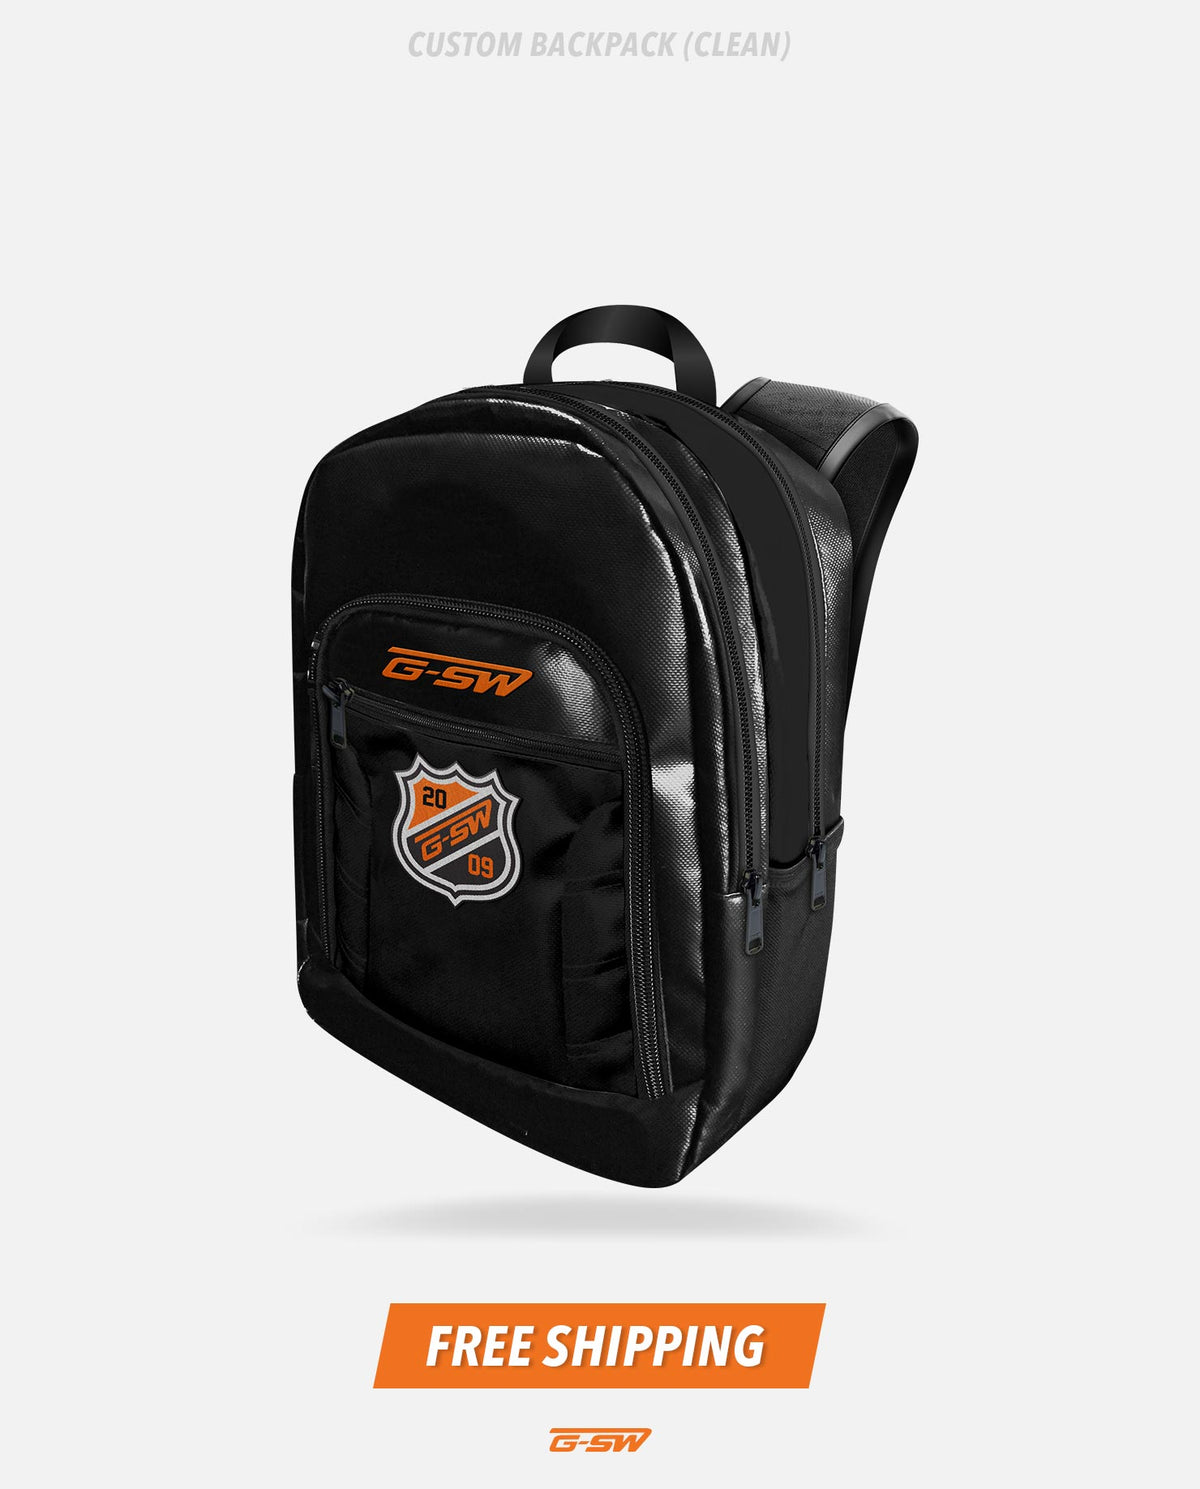 GSW Custom Backpack (Clean)